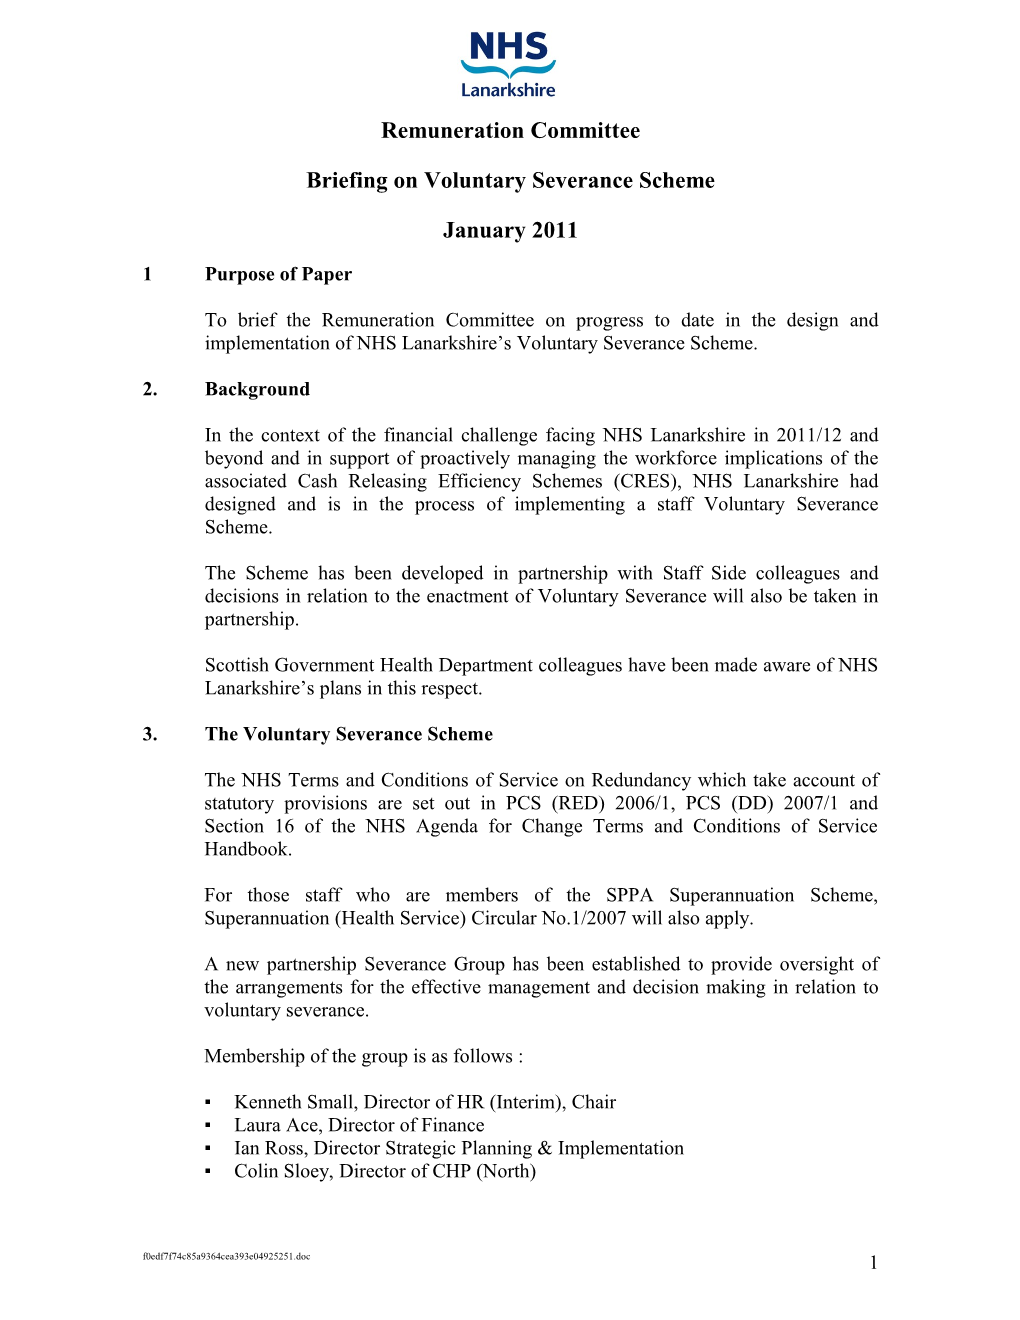 Briefing on Voluntary Severance Scheme